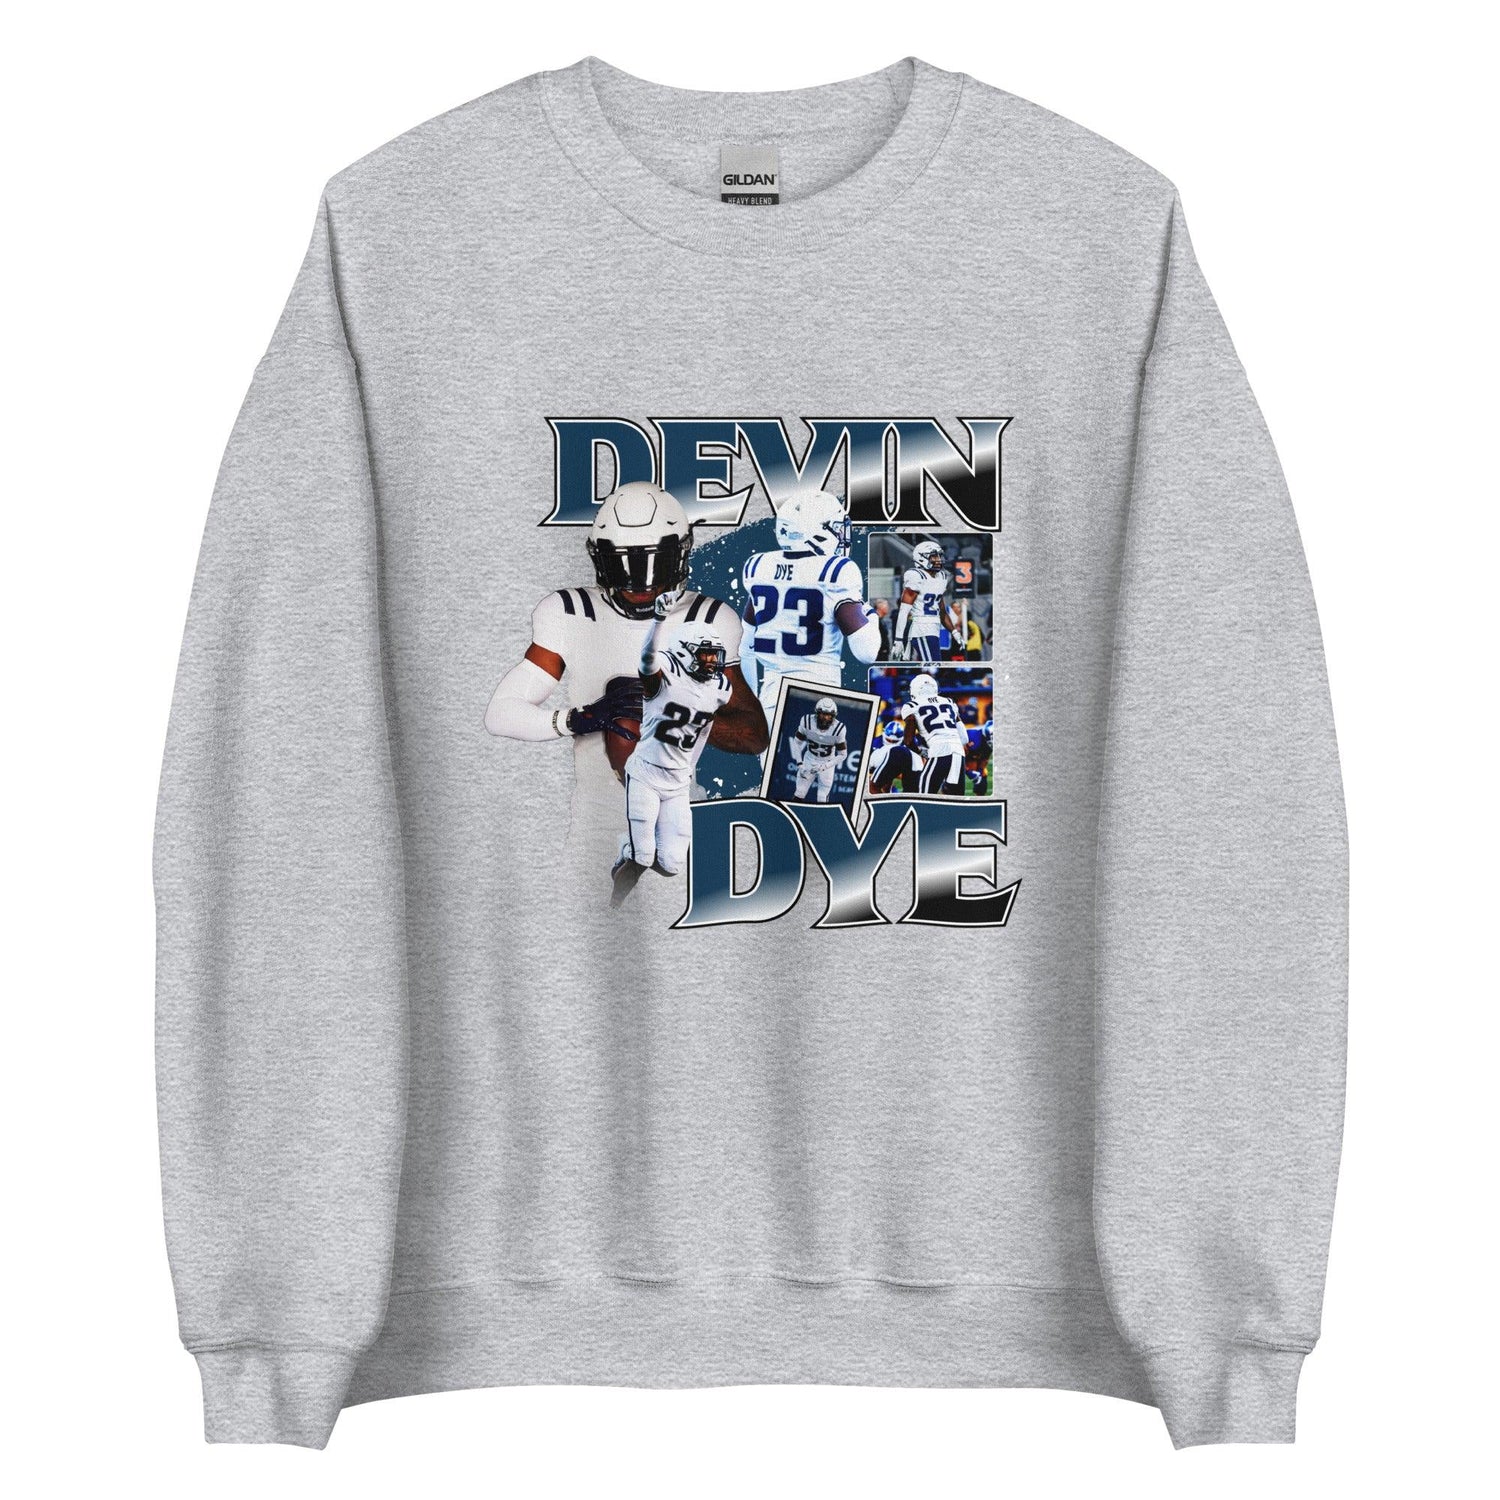 Devin Dye "Vintage" Sweatshirt - Fan Arch